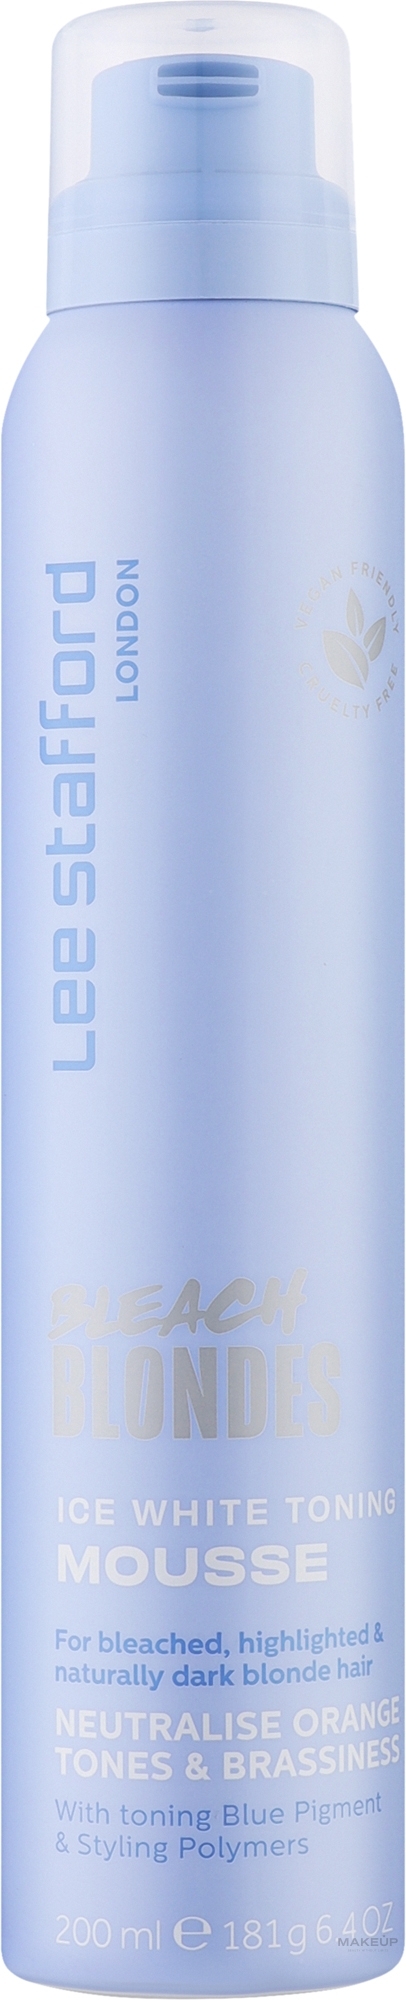 Тонуючий мус з синім пігментом для освітленого волосся - Lee Stafford Bleach BlondeIce White Toningh Mousse — фото 200ml